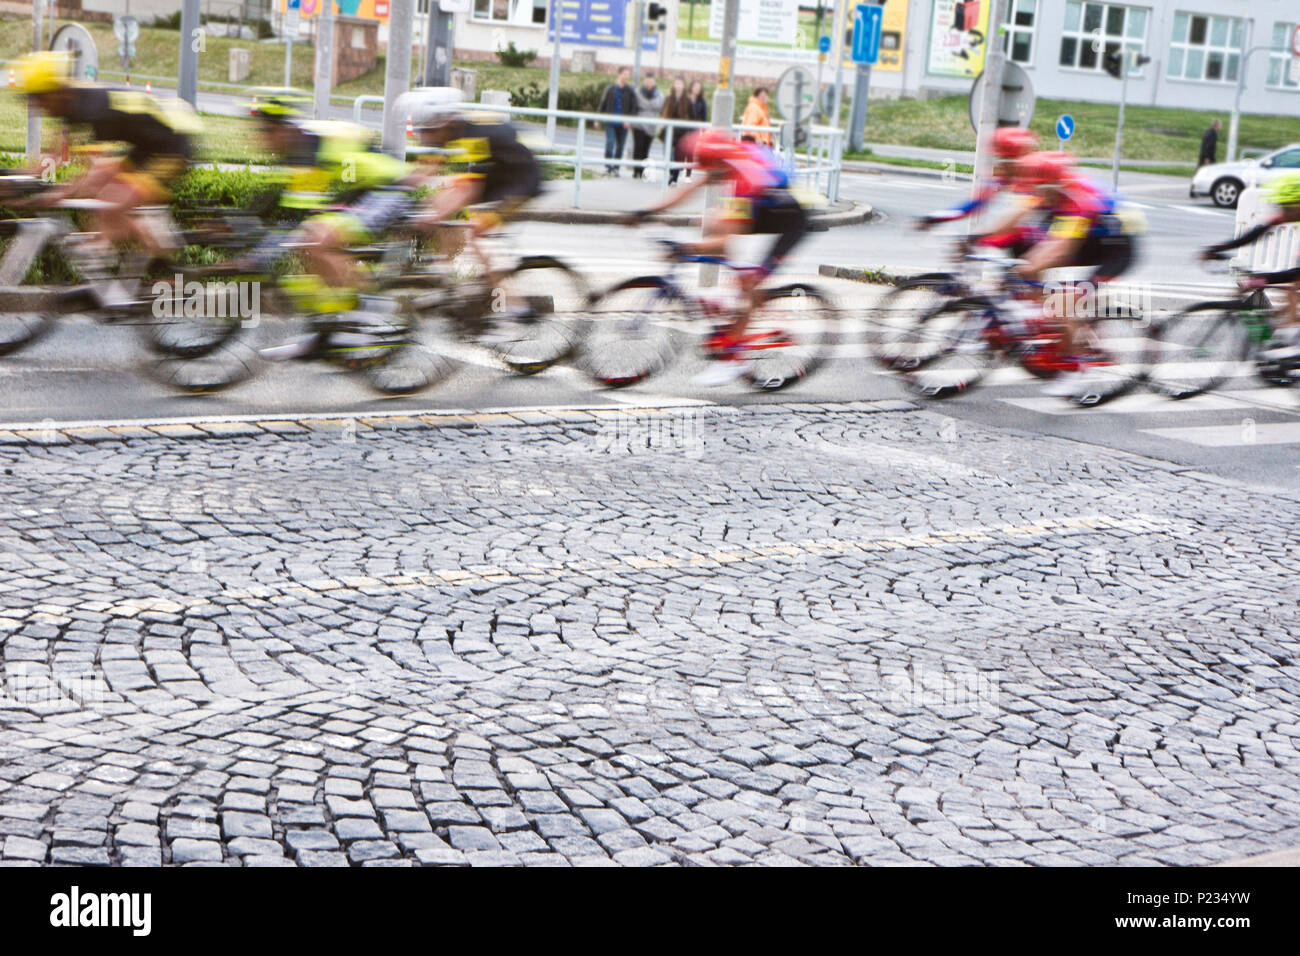 Radfahrer sprinten bei einer Probefahrt Fahrrad, das in den Straßen der Stadt, motion blur Effekt Stockfoto